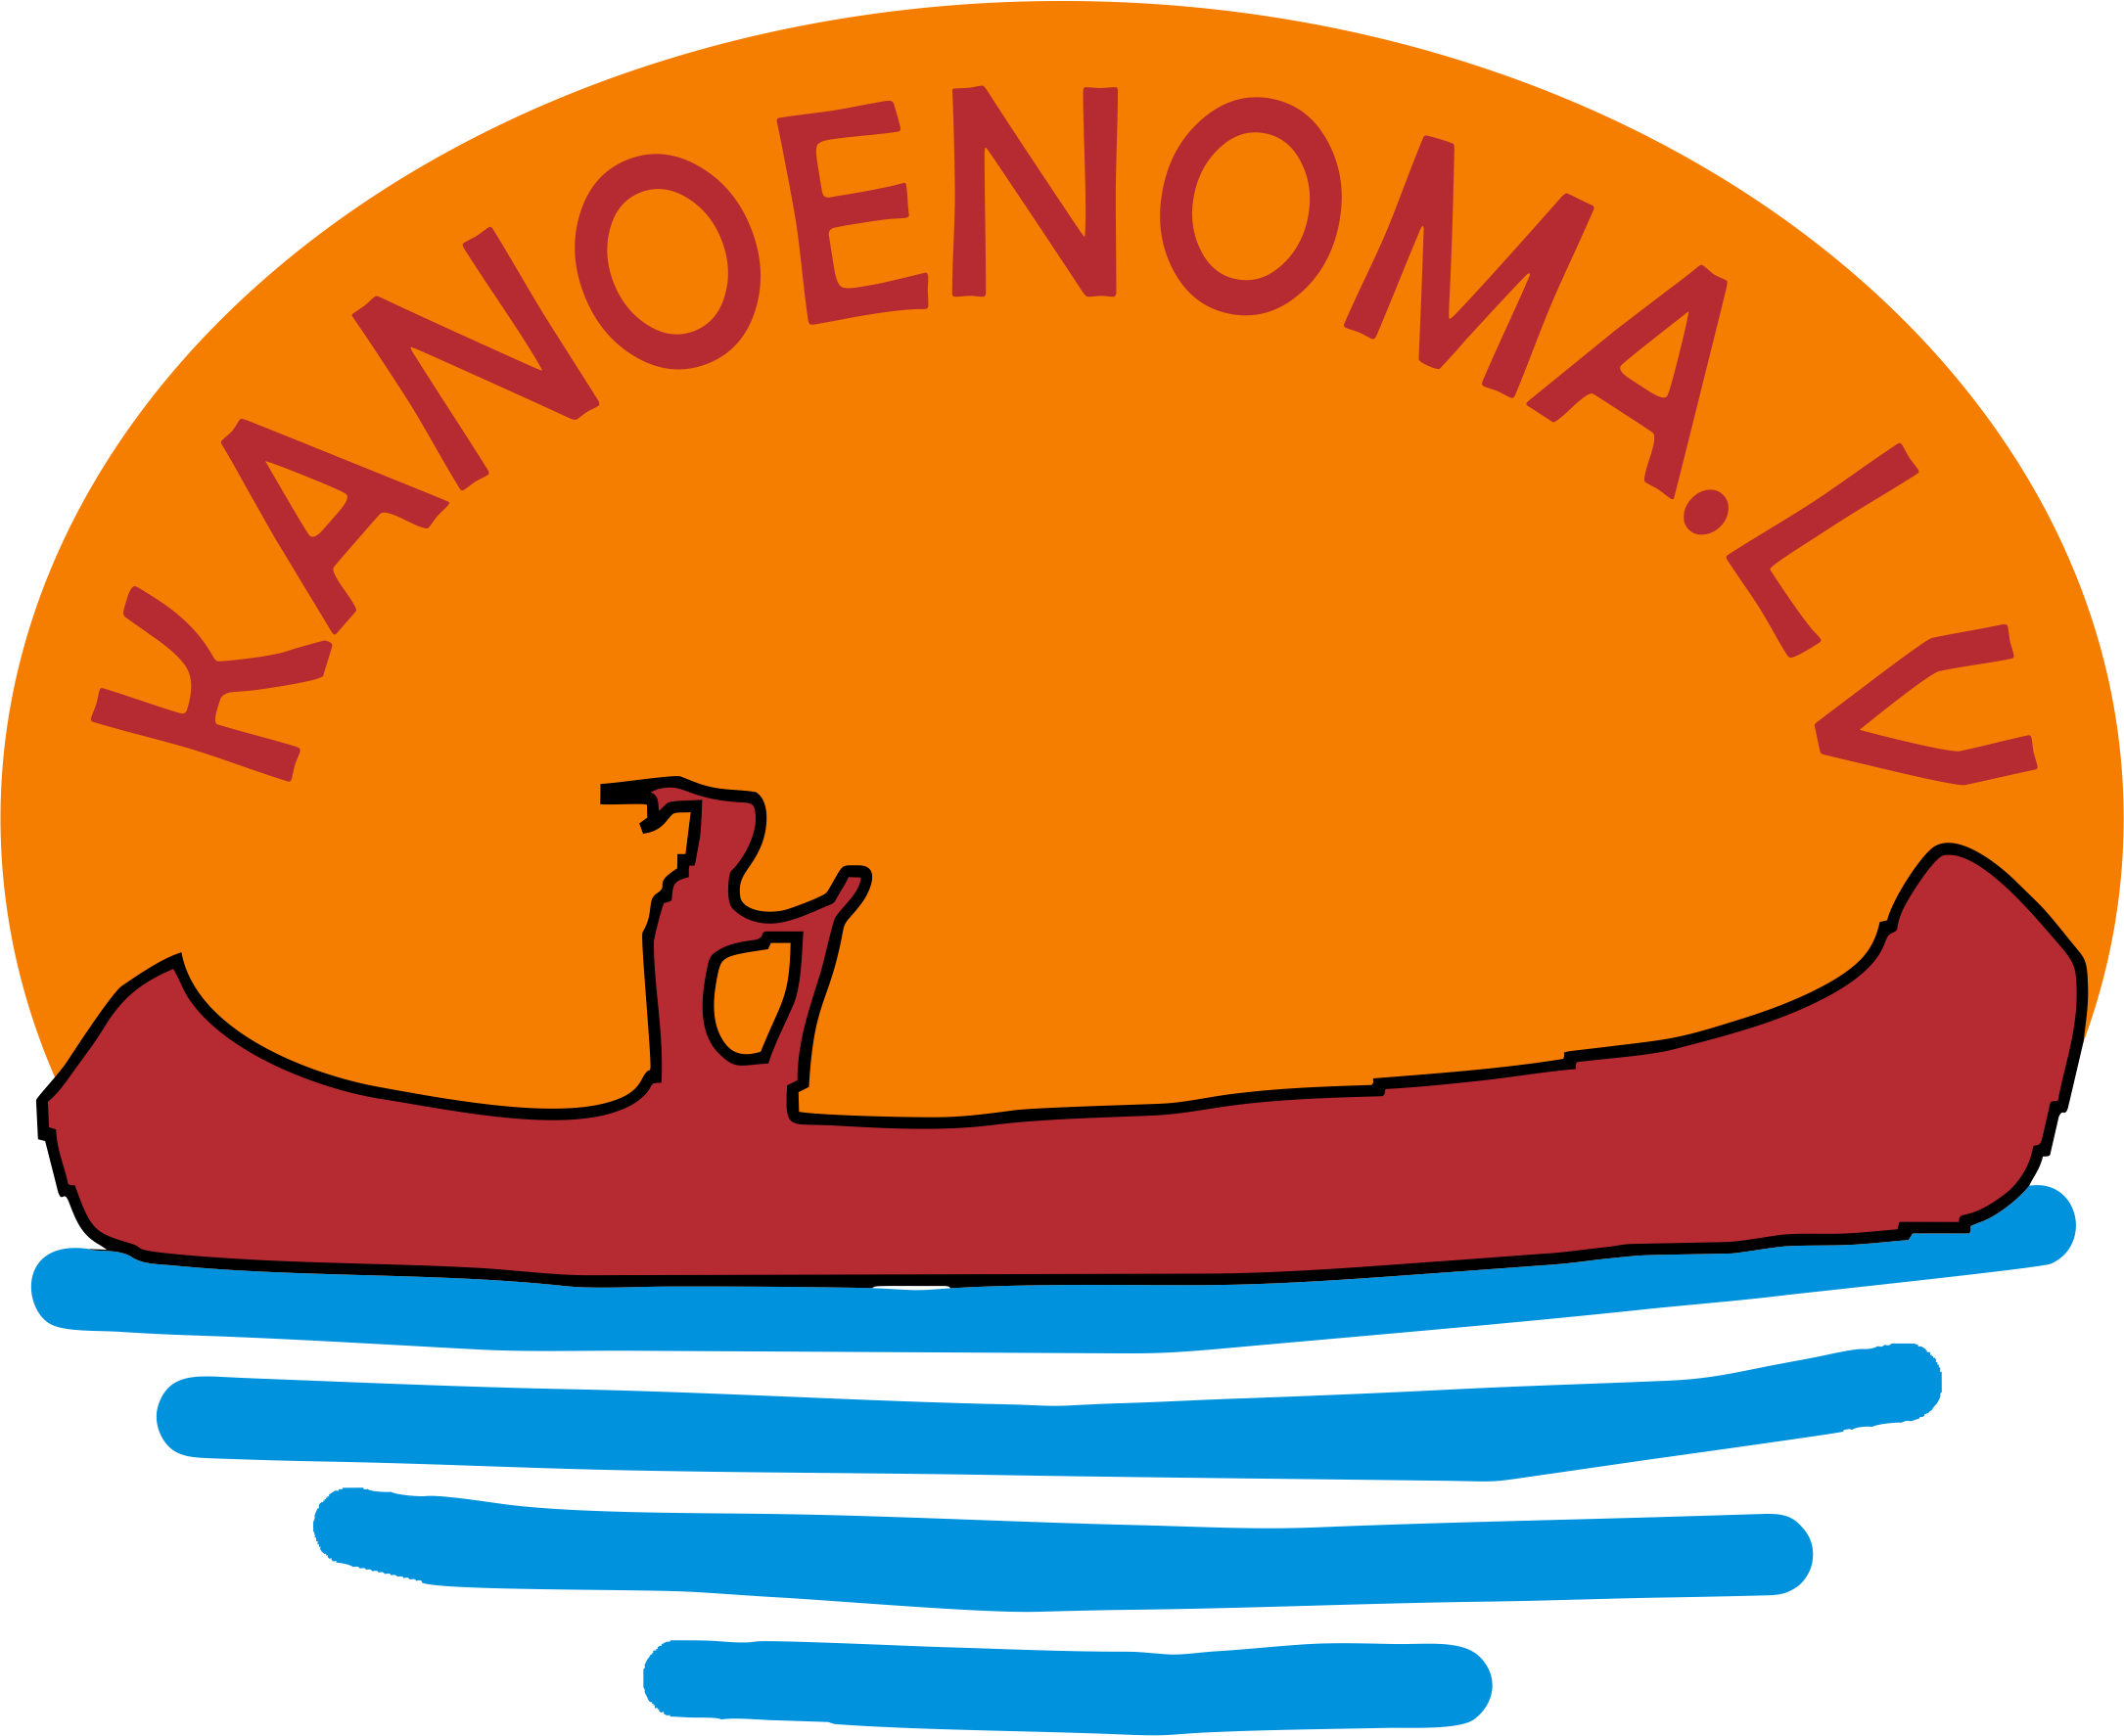 Kanoe noma